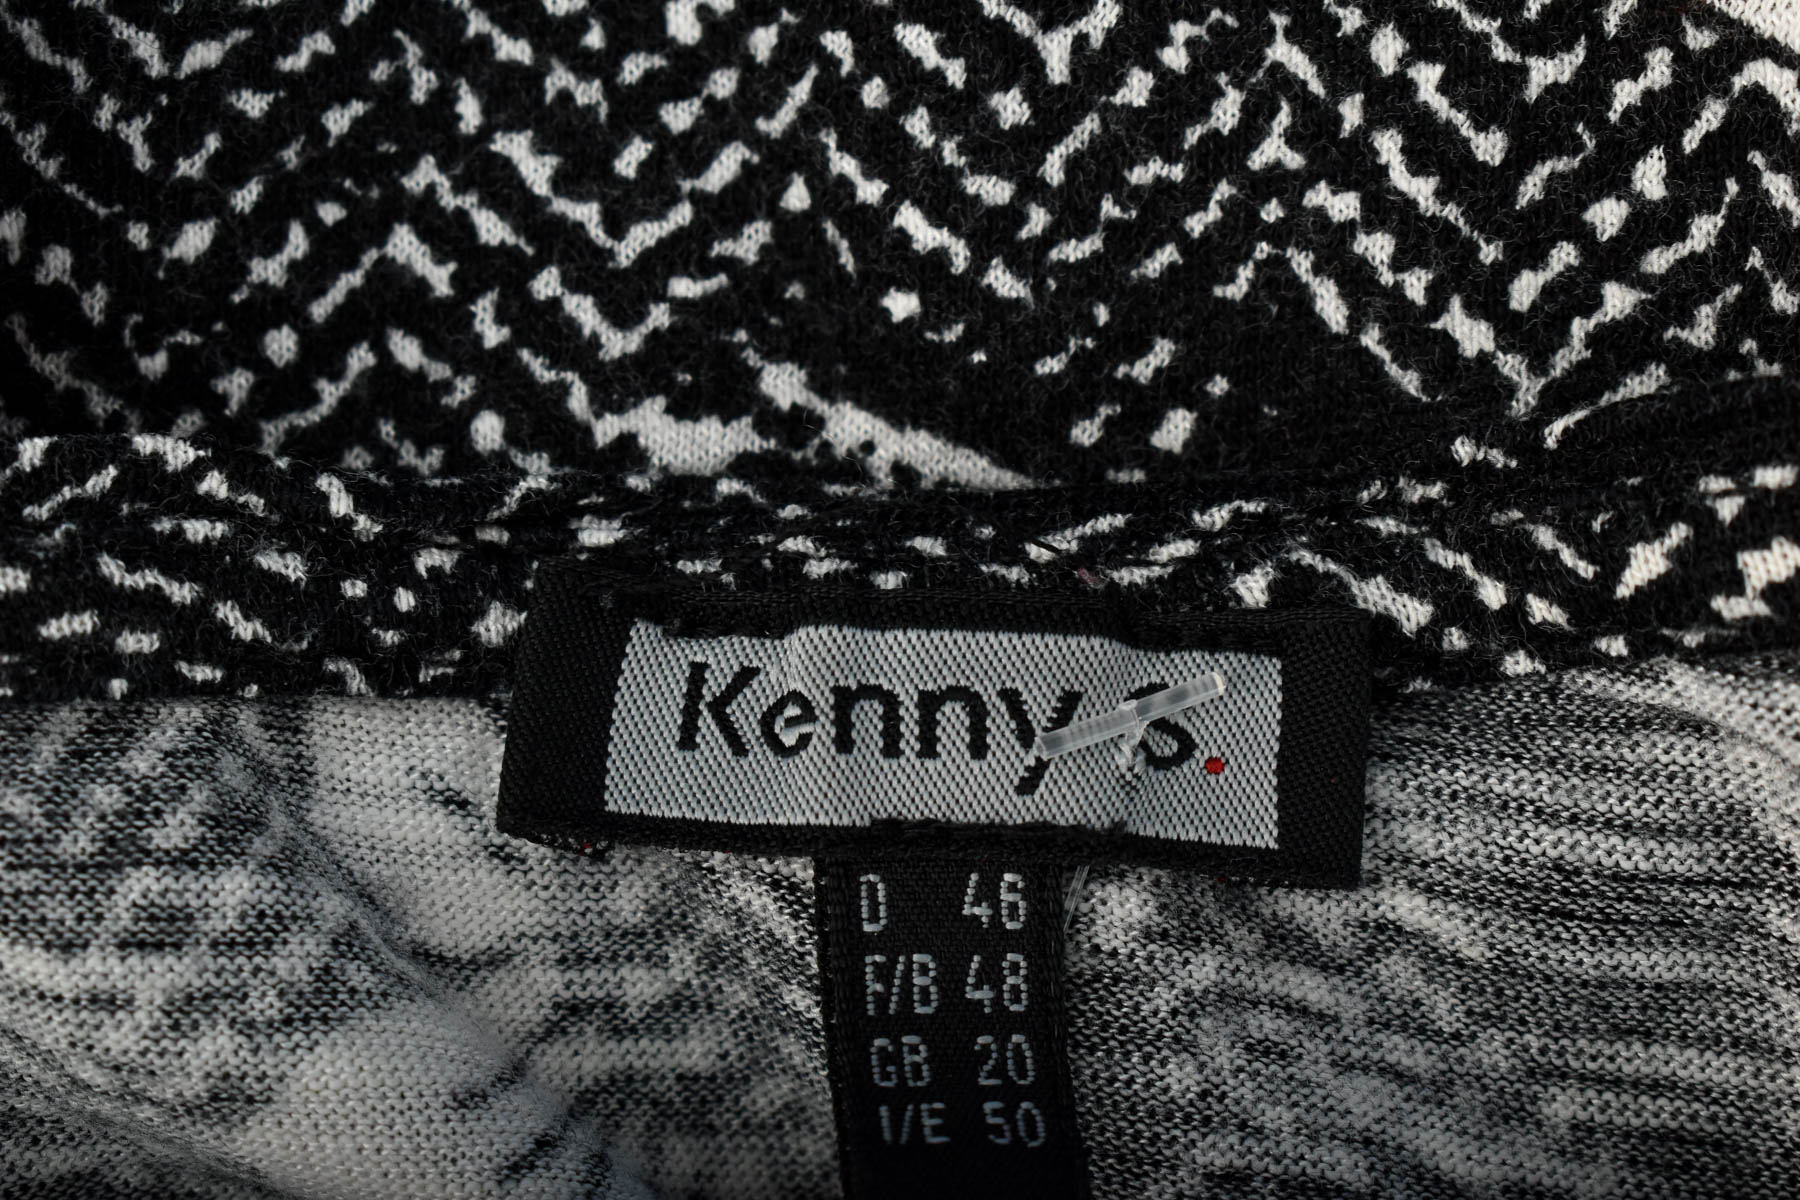 Women's blouse - Kenny S. - 2